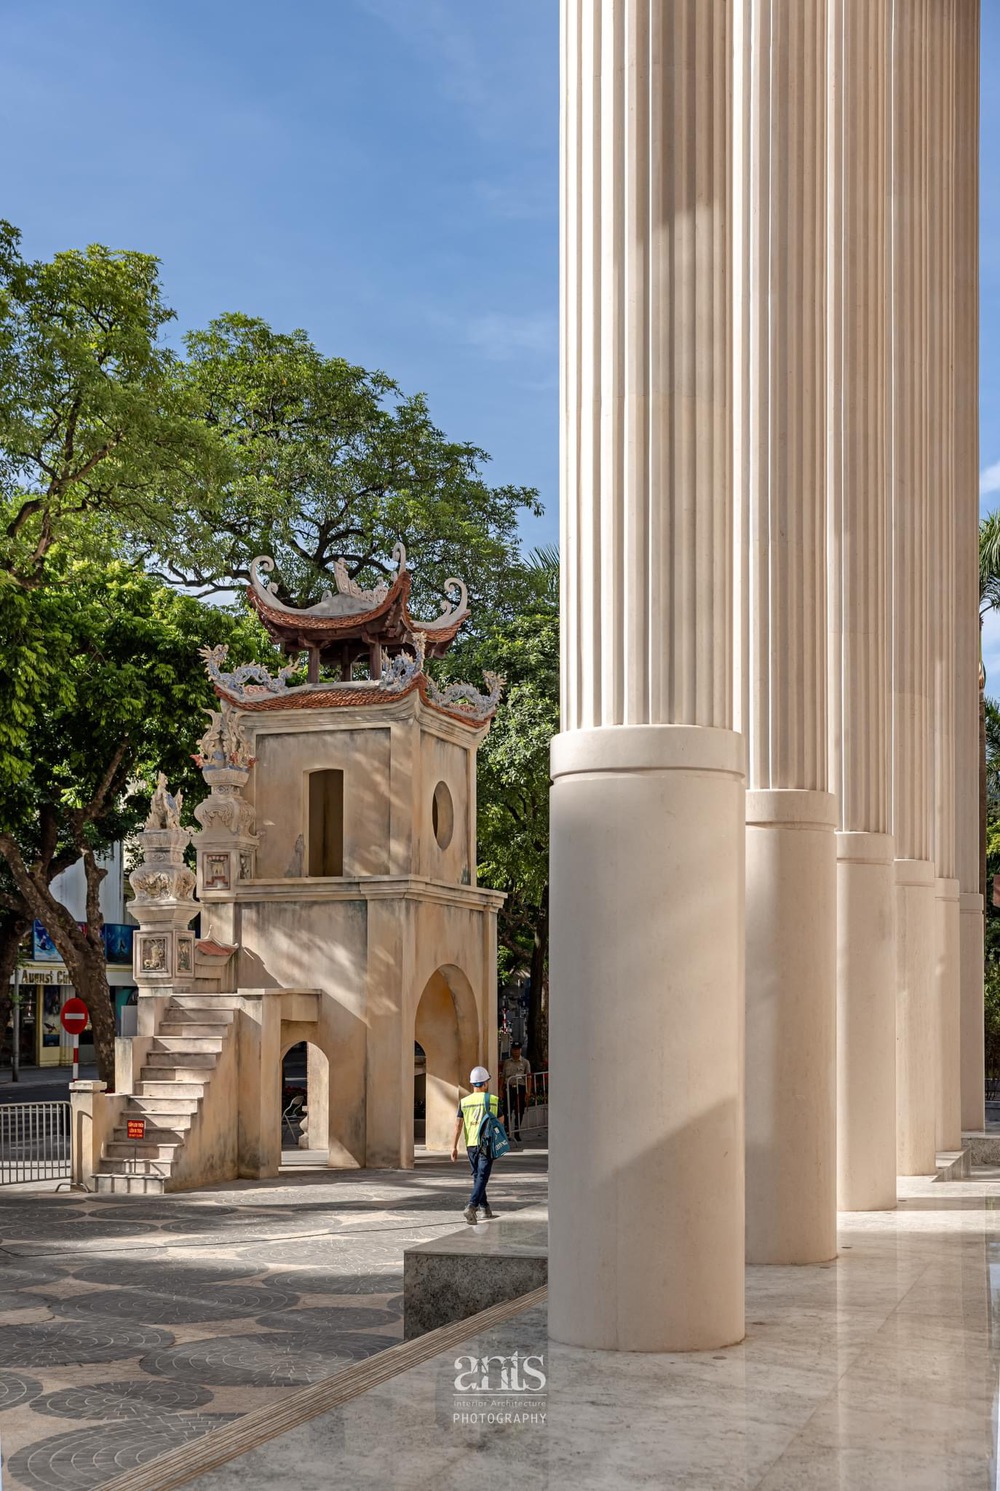 Công trình nhà hát mới tại Hà Nội: giao thoa văn hoá mạnh mẽ, chinh phục giới trẻ từ cái nhìn đầu tiên - Ảnh 14.